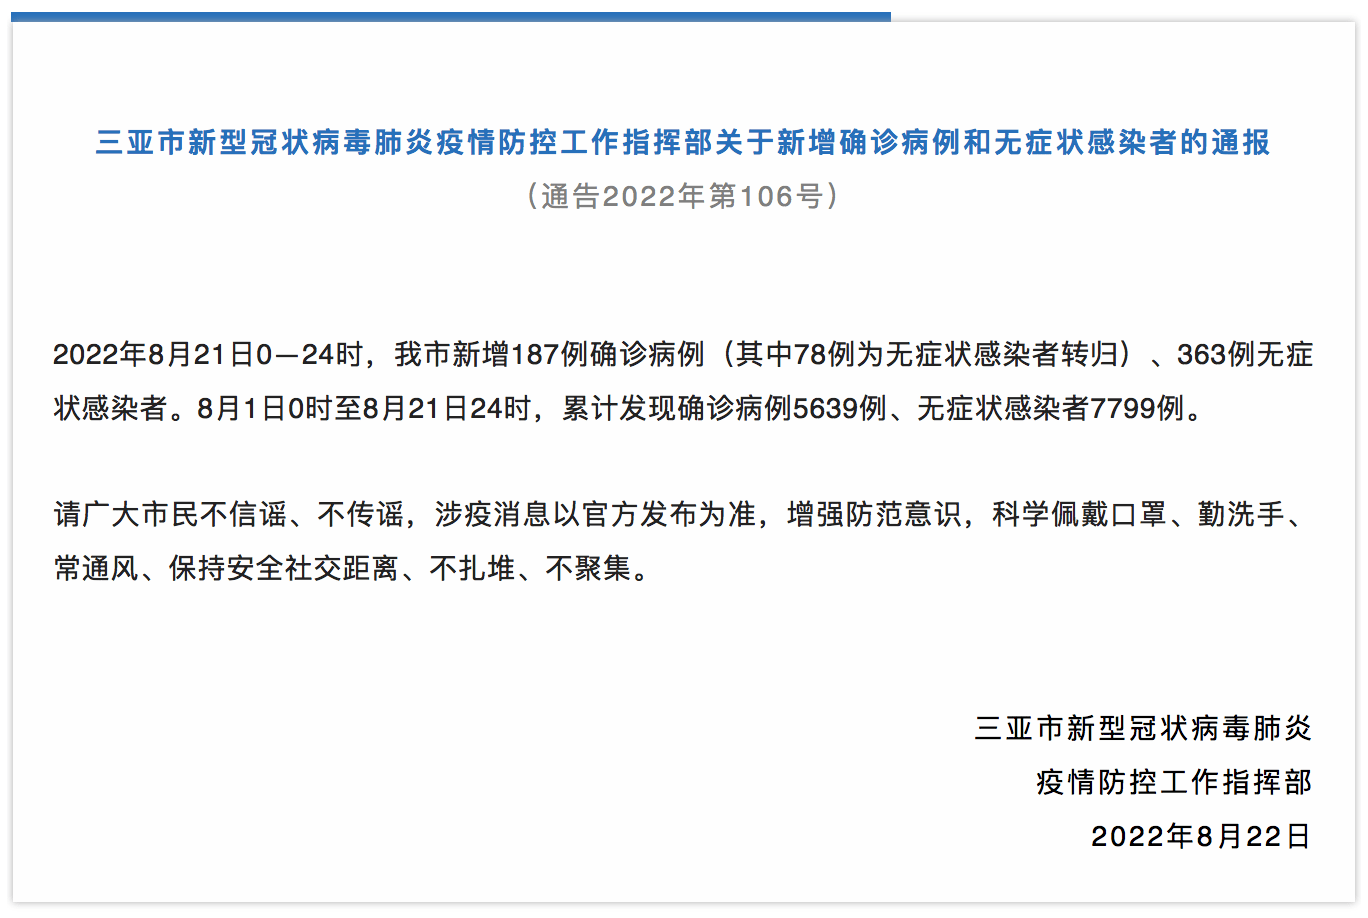 海南省三亚市新增187例确诊病例、363例无症状感染者